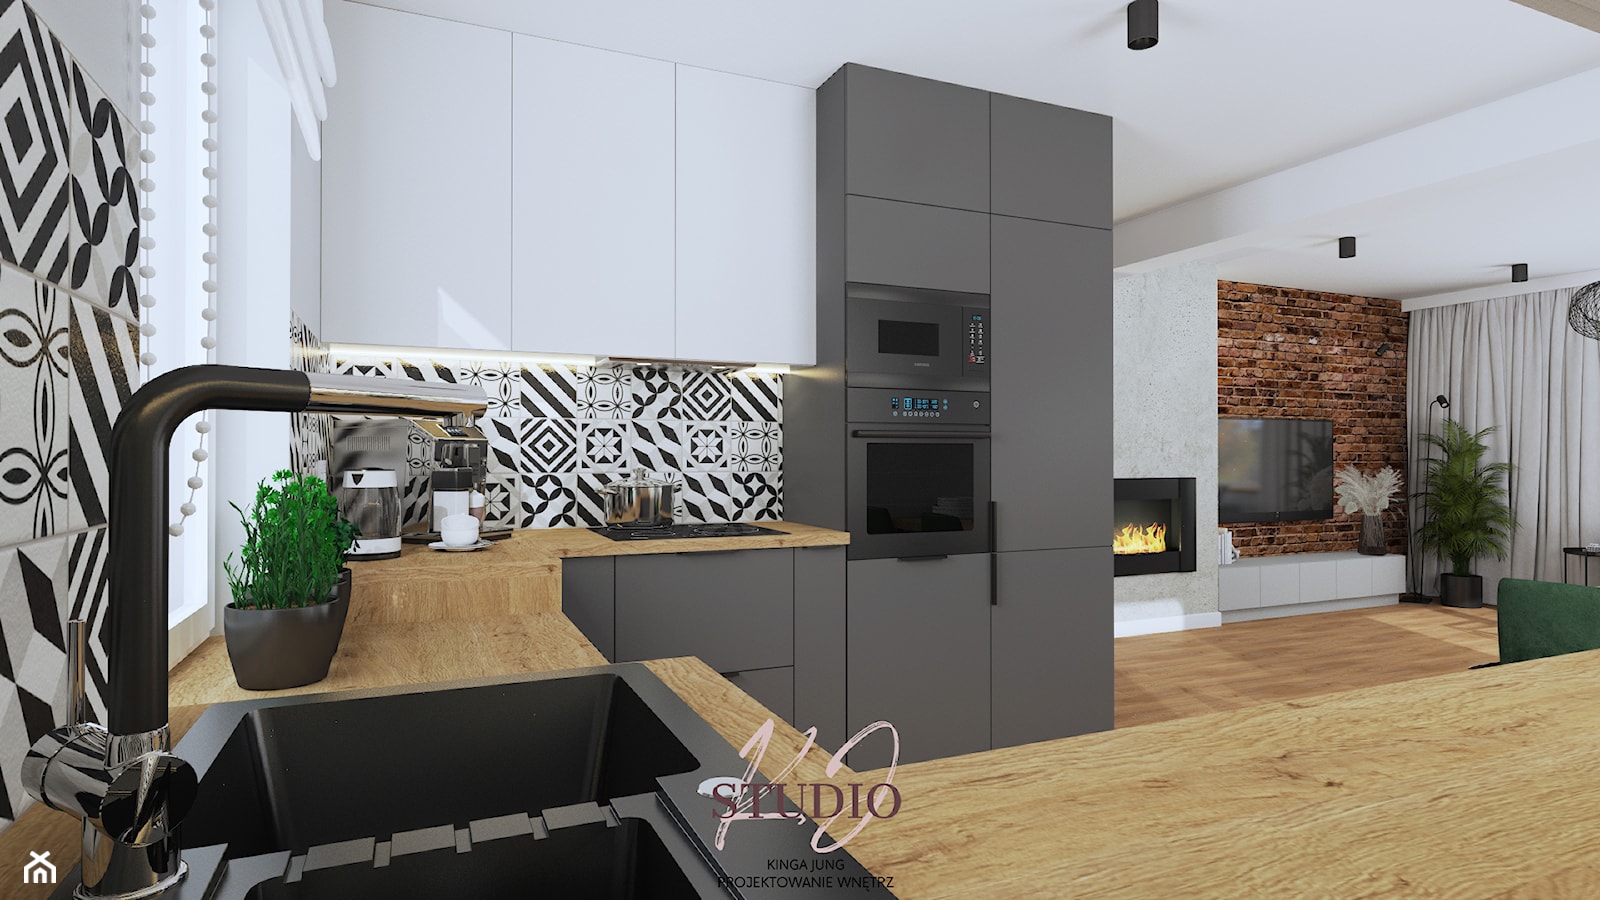 Kuchnia w industrialnym klimacie (dom Wieprz) - Kuchnia, styl industrialny - zdjęcie od KJ Studio Projektowanie wnętrz - Homebook